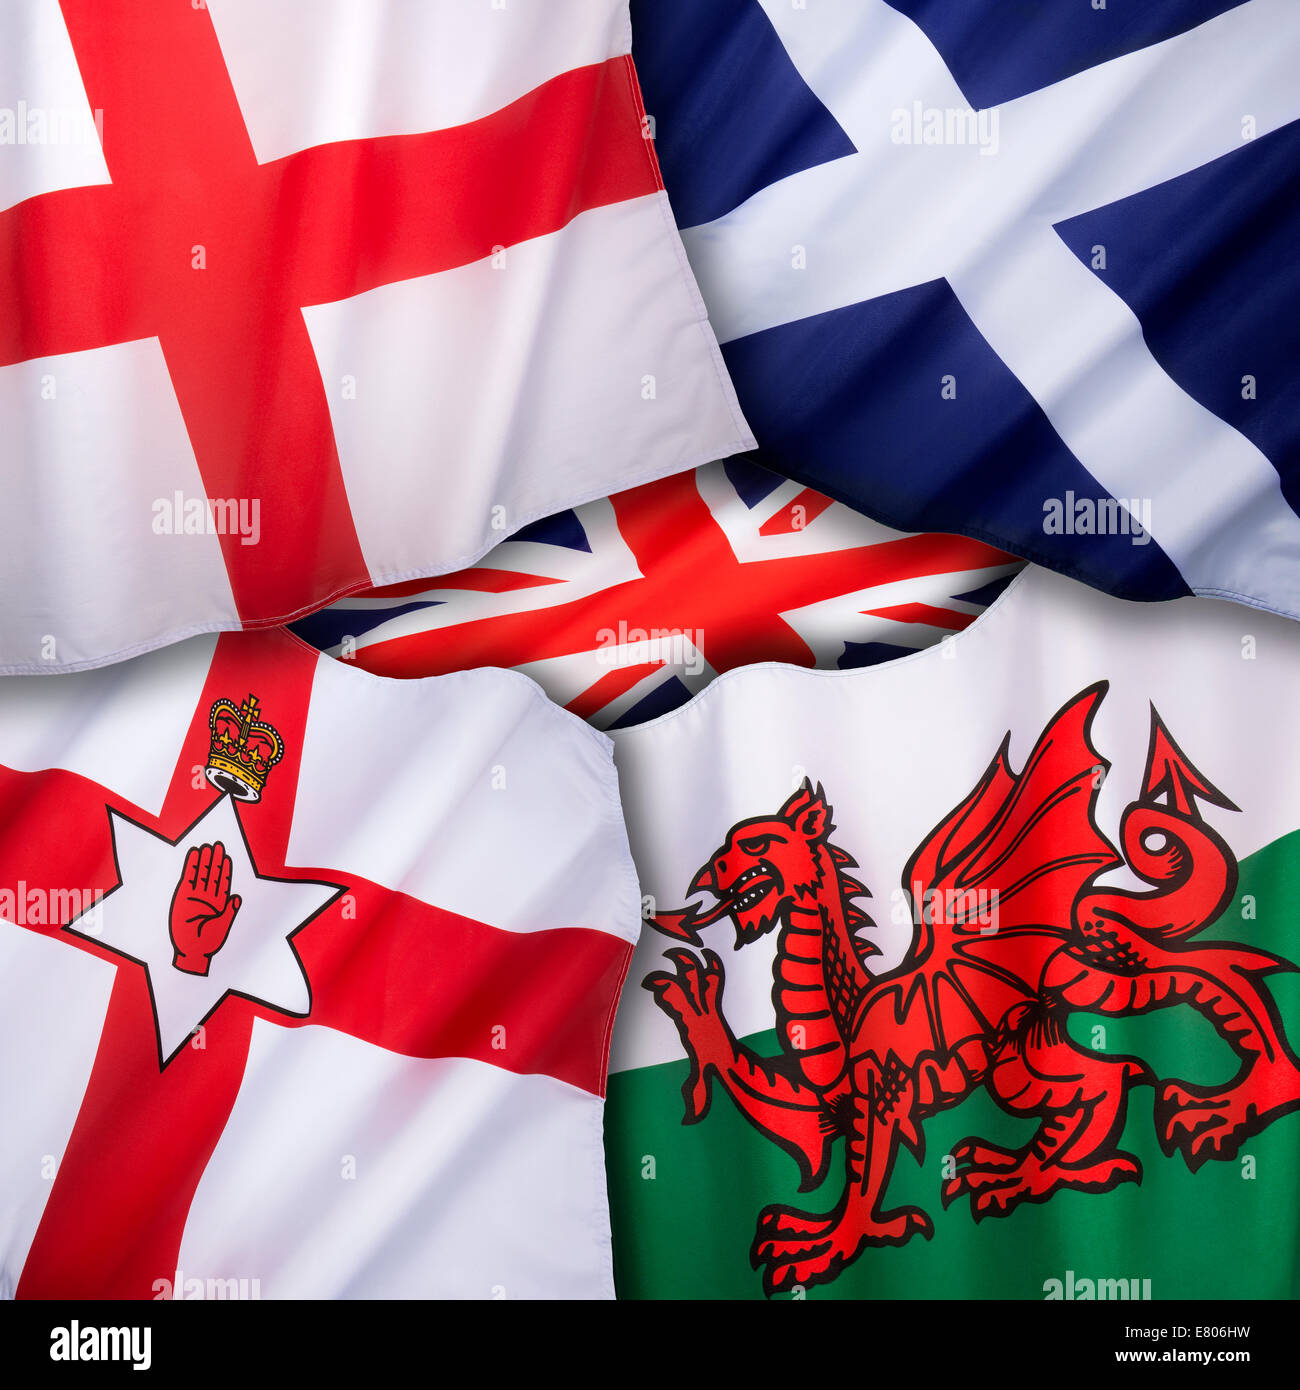 Les drapeaux du Royaume-Uni de Grande-Bretagne - Angleterre, Ecosse, Pays de Galles et d'Irlande du Nord. Banque D'Images